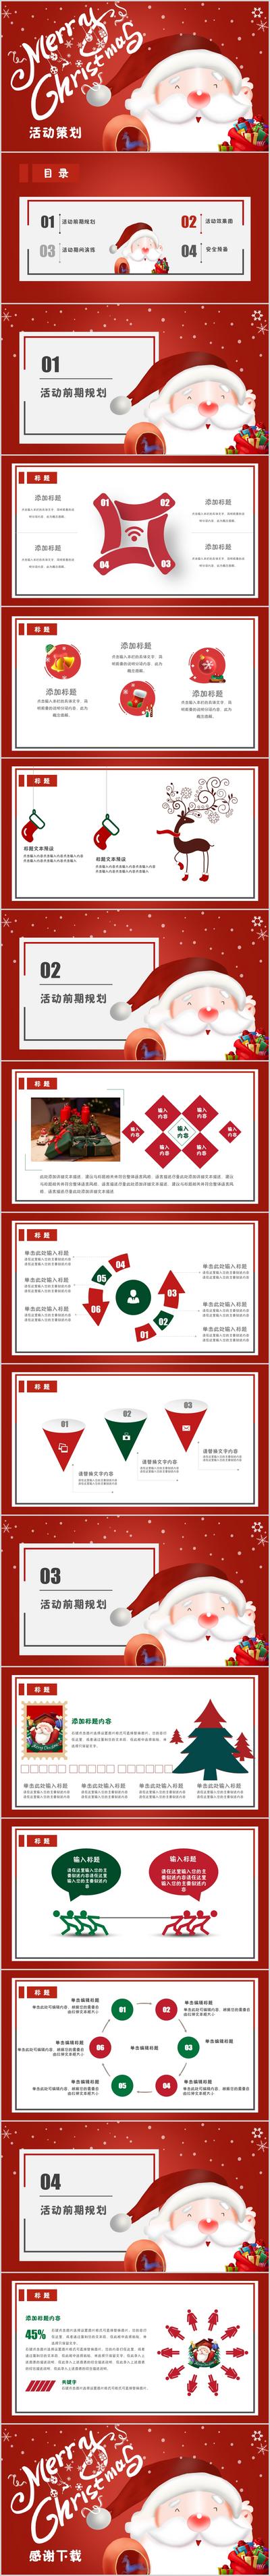 南门网 广告 海报 节日 PPT 圣诞节 活动 潘通红 策划案 手绘 卡通 圣诞老人 热点 系列